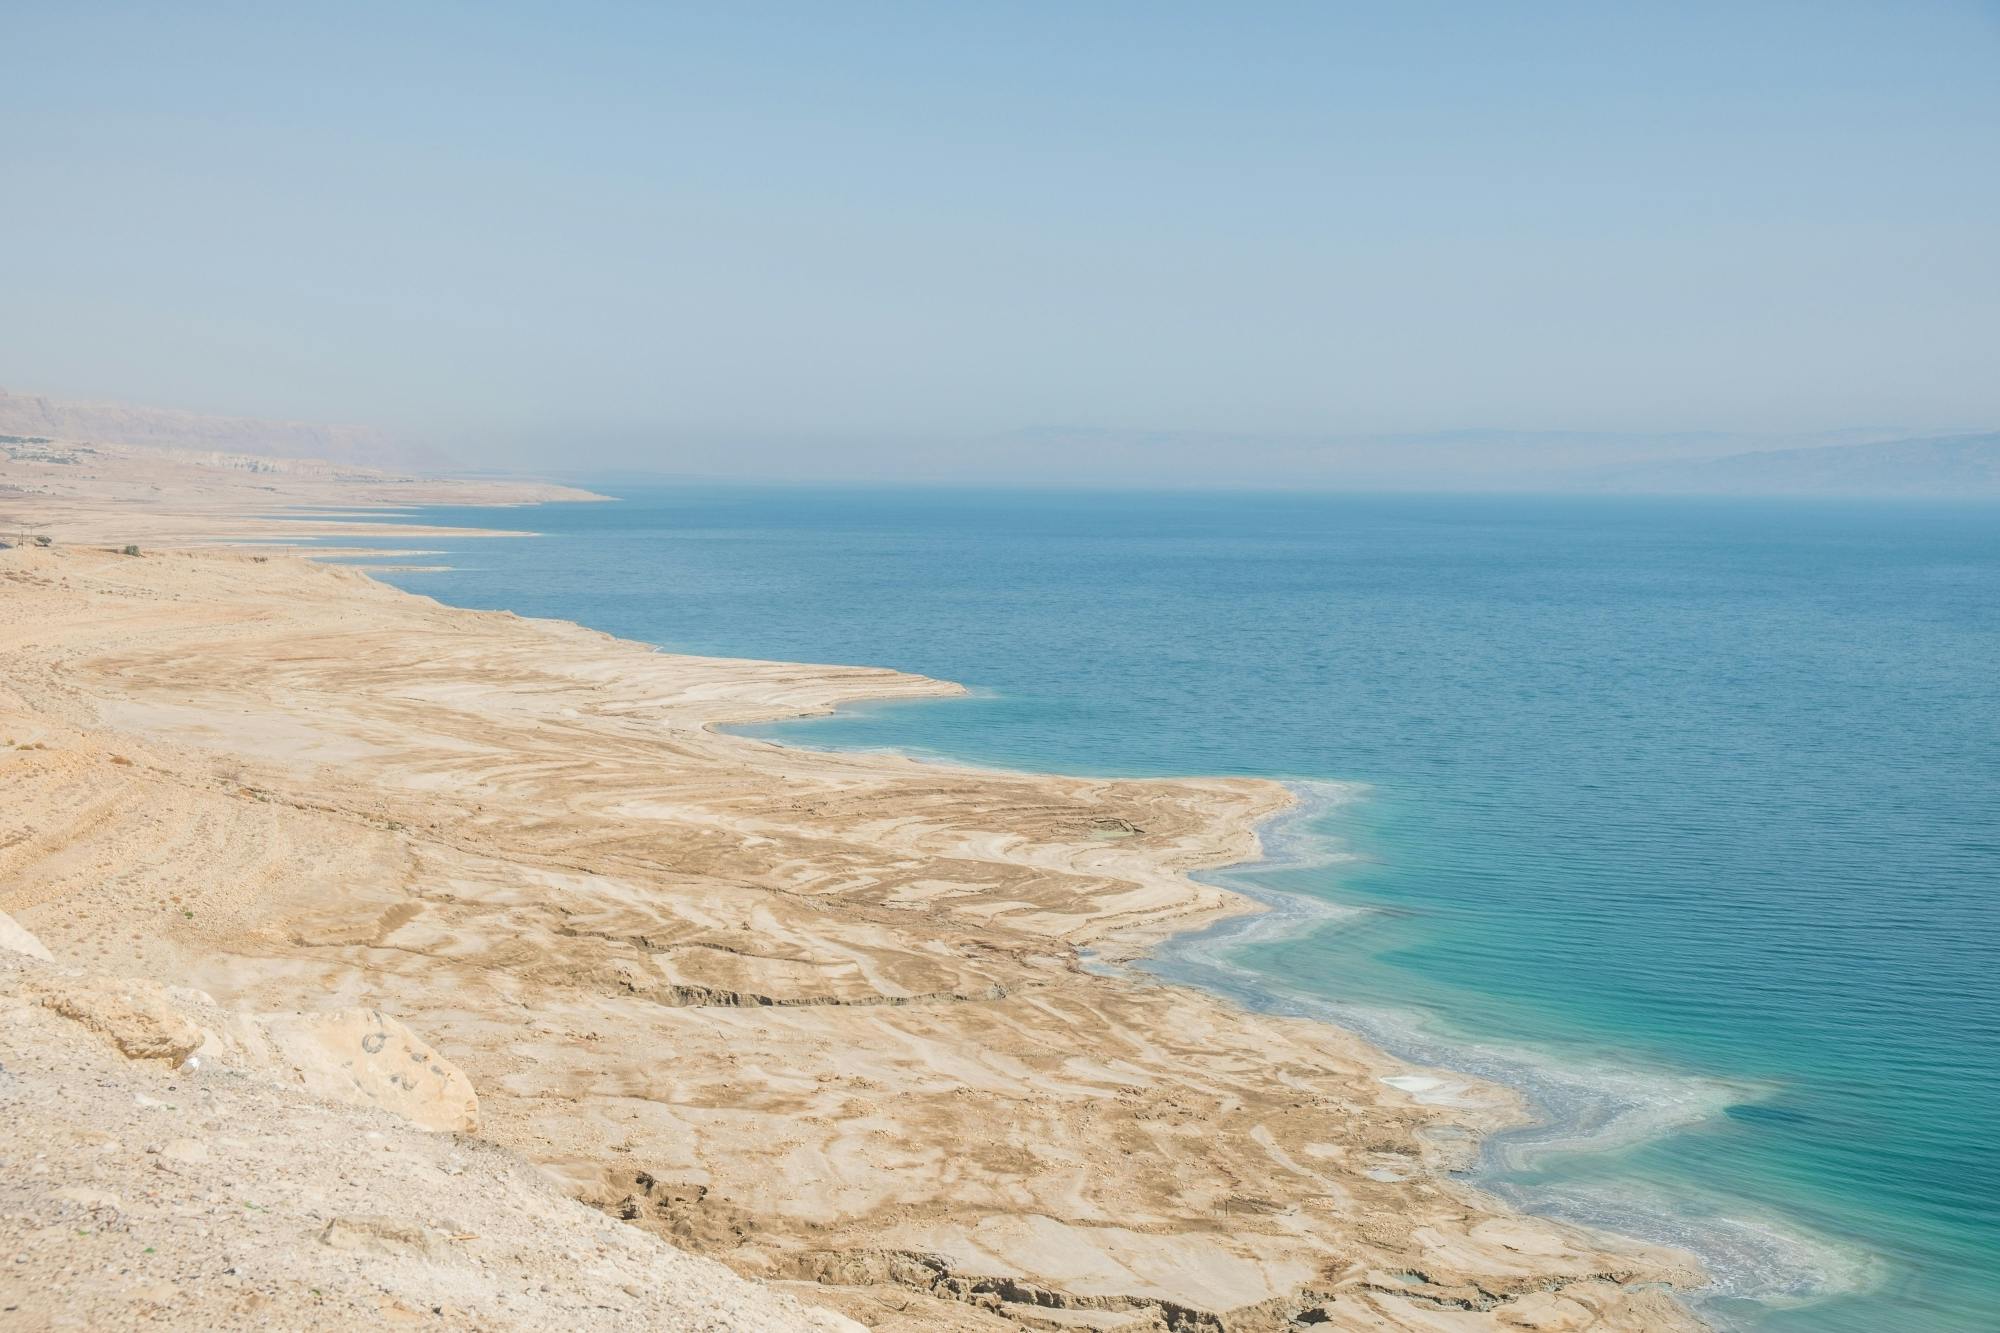 Ganztägiger Ausflug zum Toten Meer ab Tel Aviv